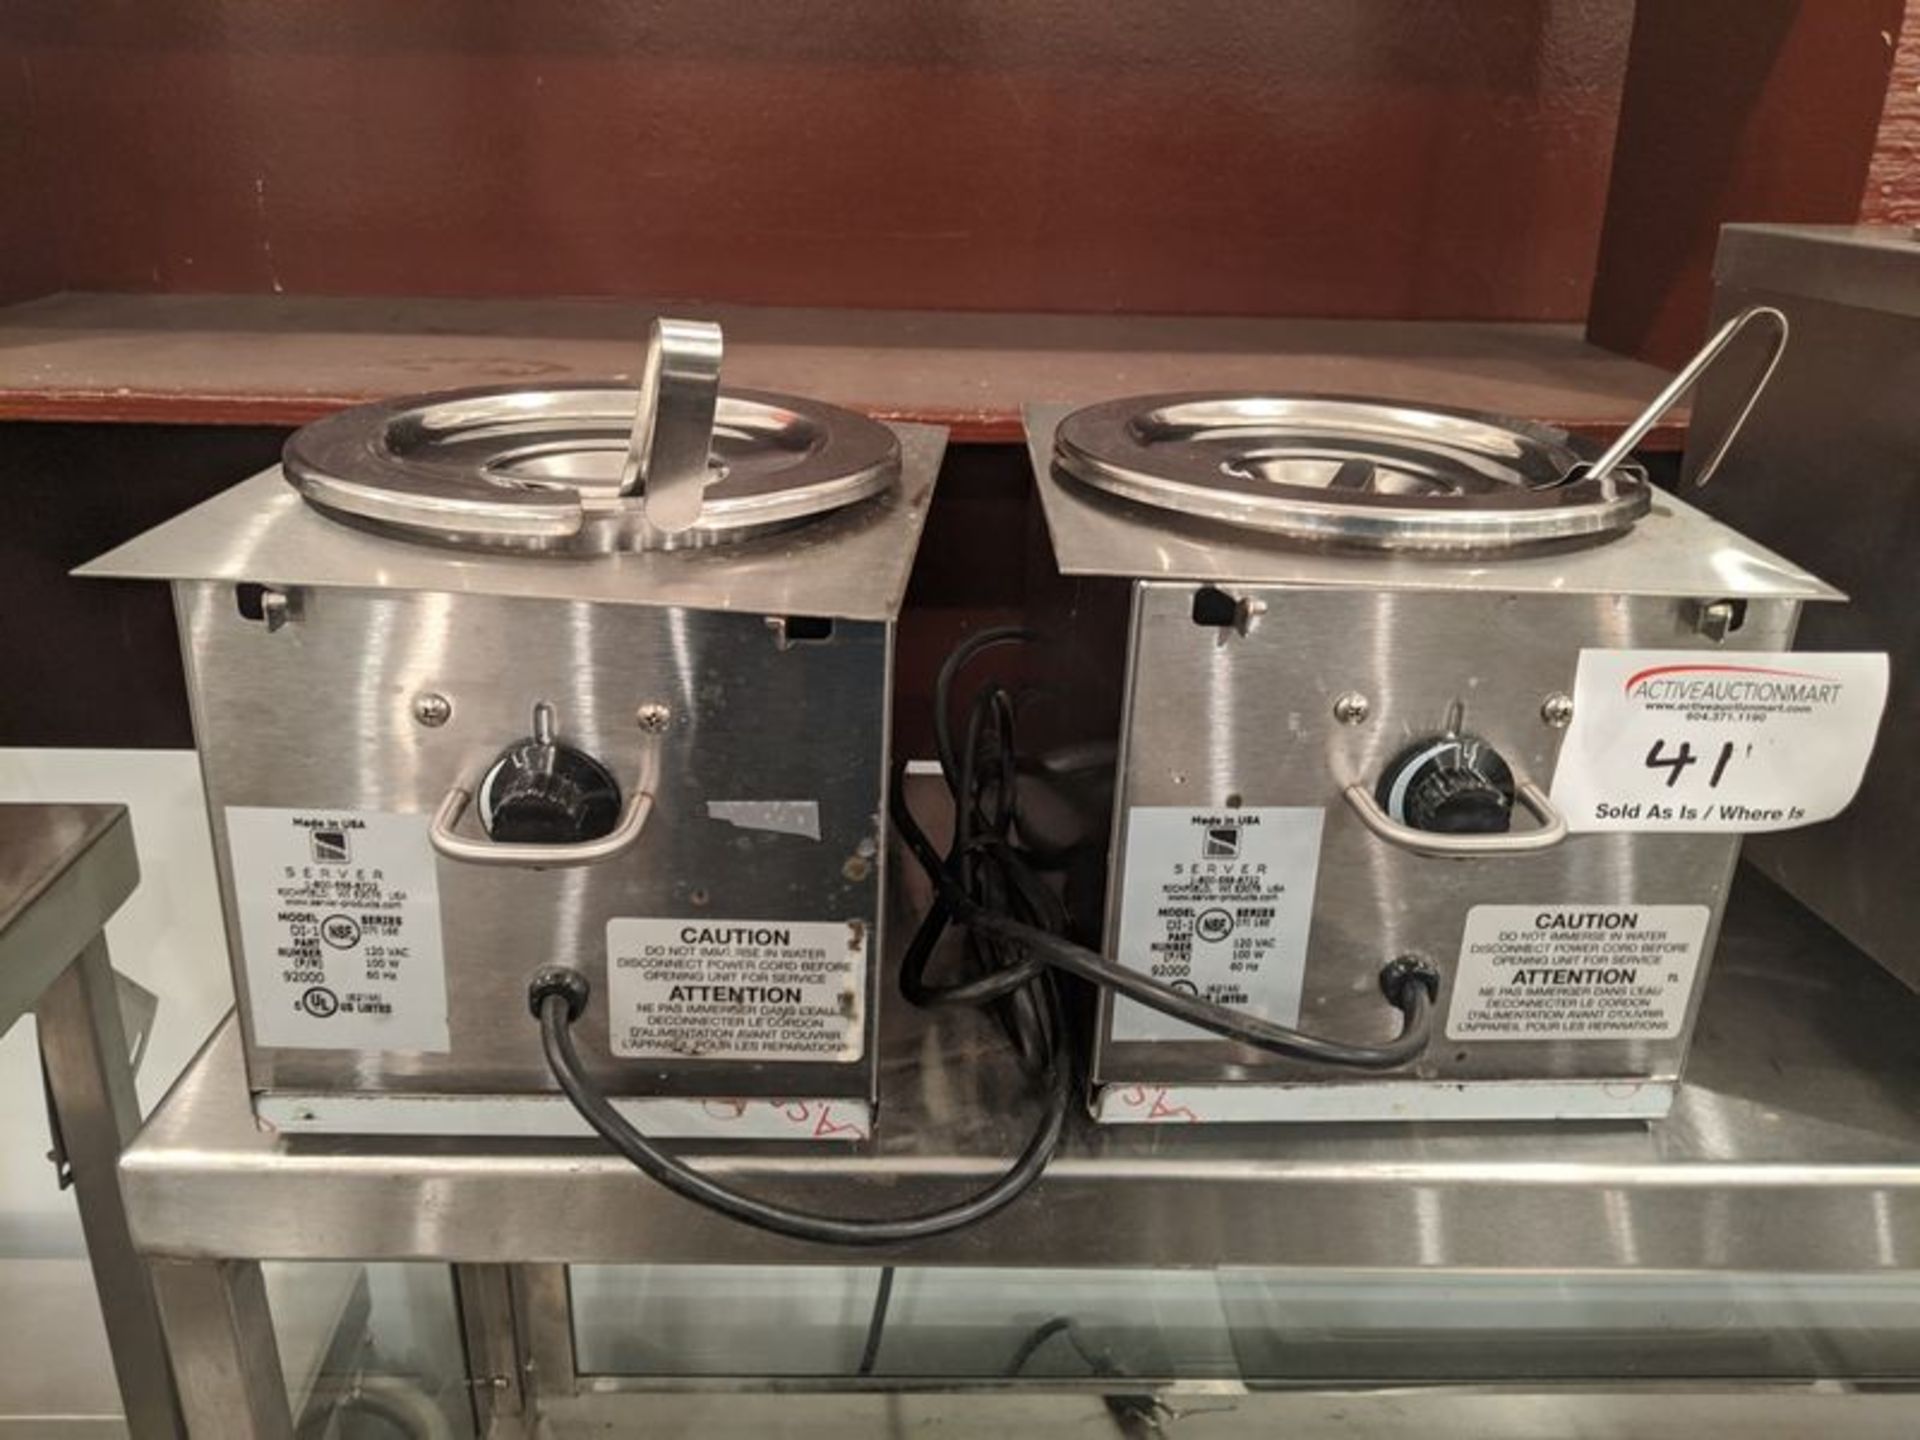 Pair of Server D1-1 Hot Serving Pumps